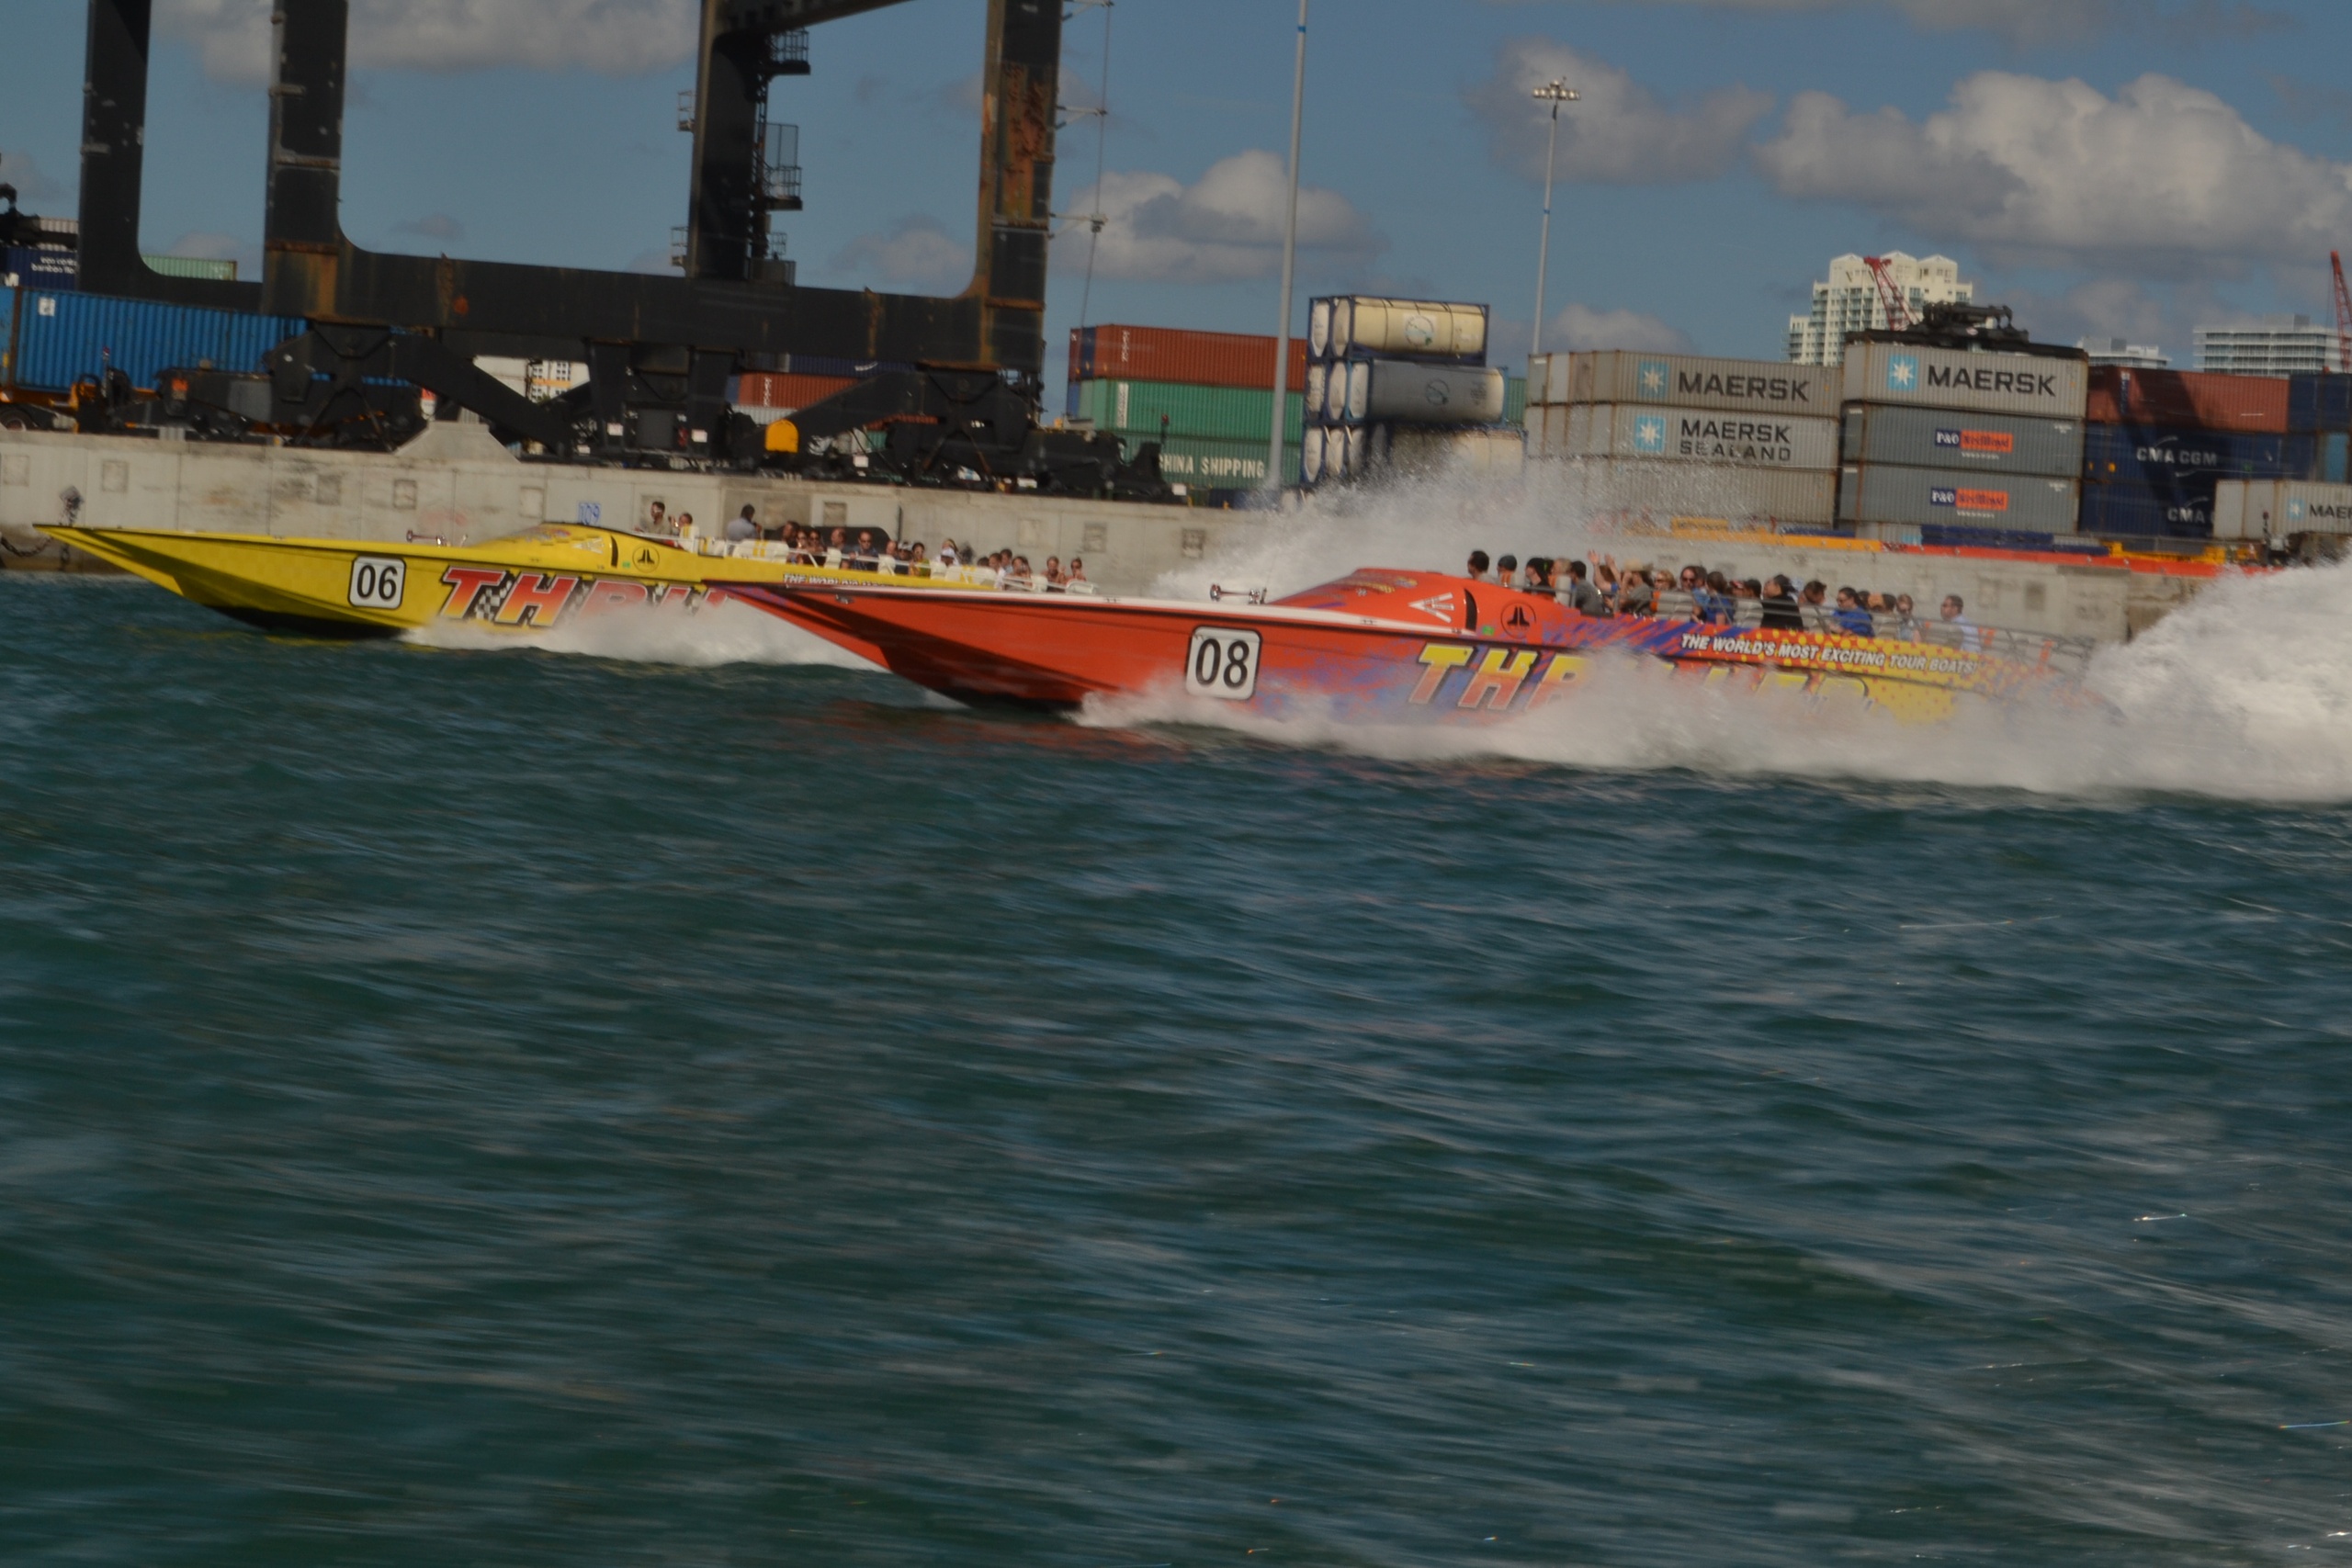 Speedboat Tour Around Miami